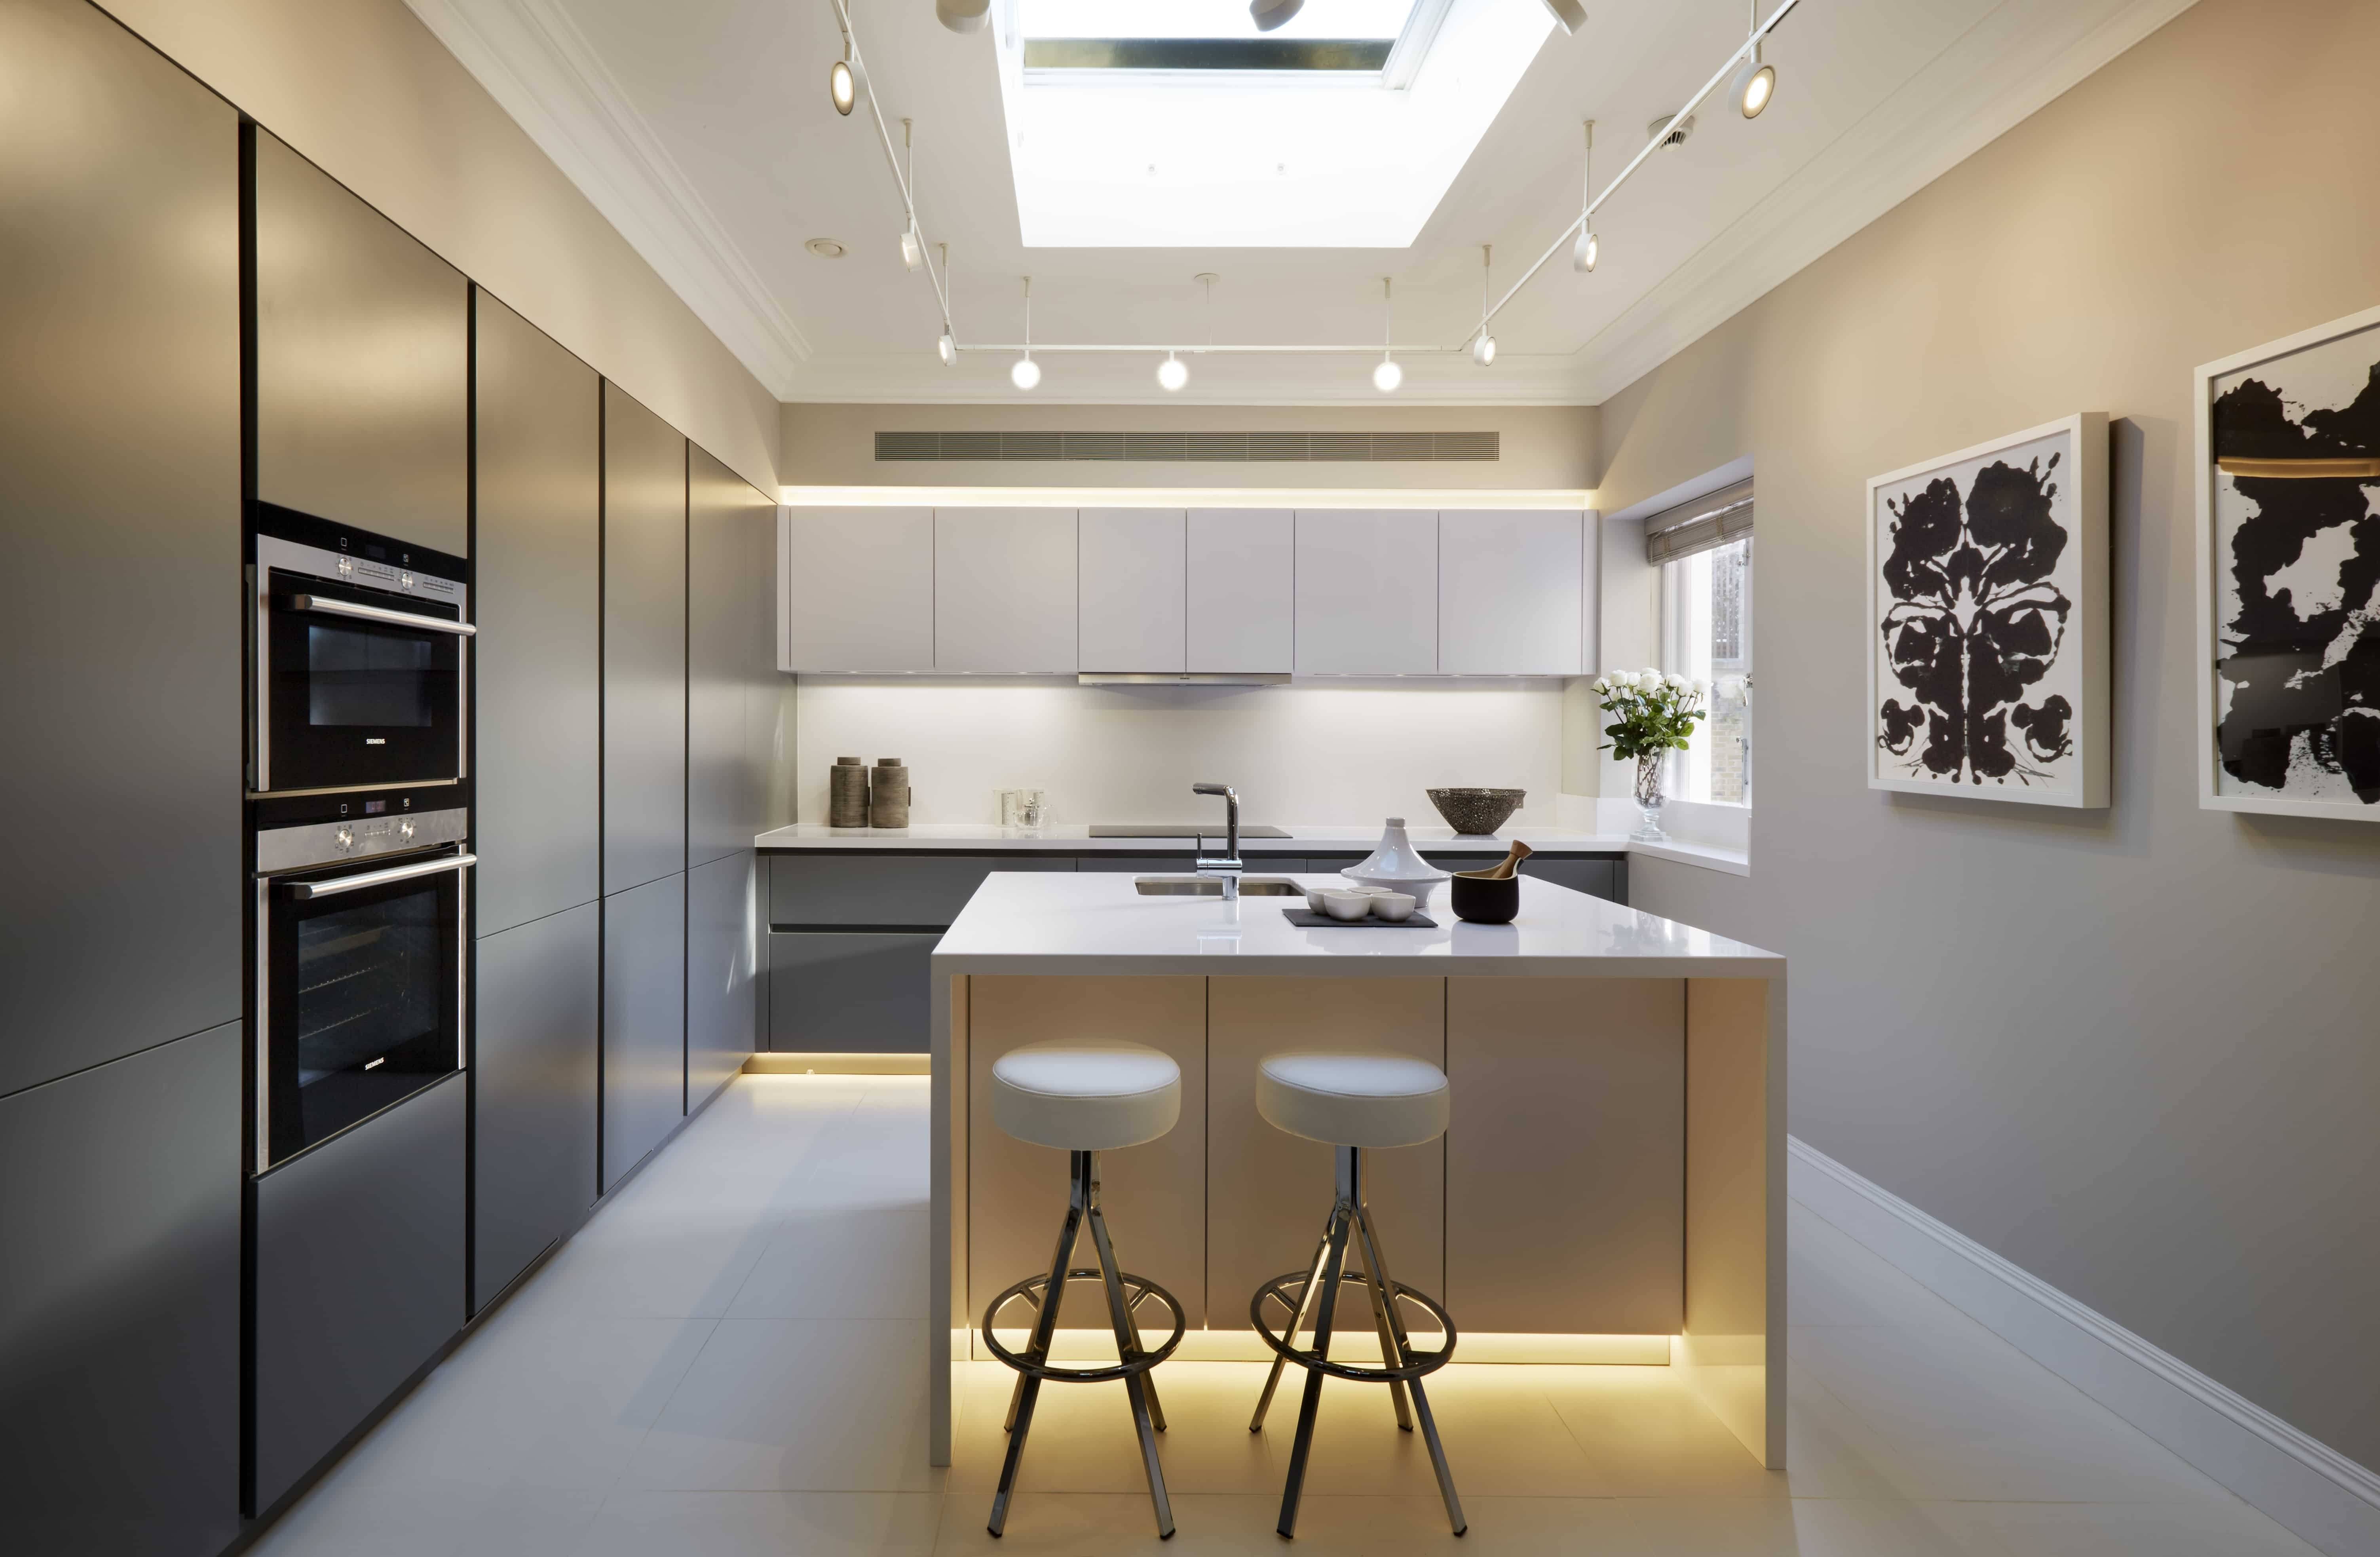 Фото кухонь в современном стиле в квартире угловая